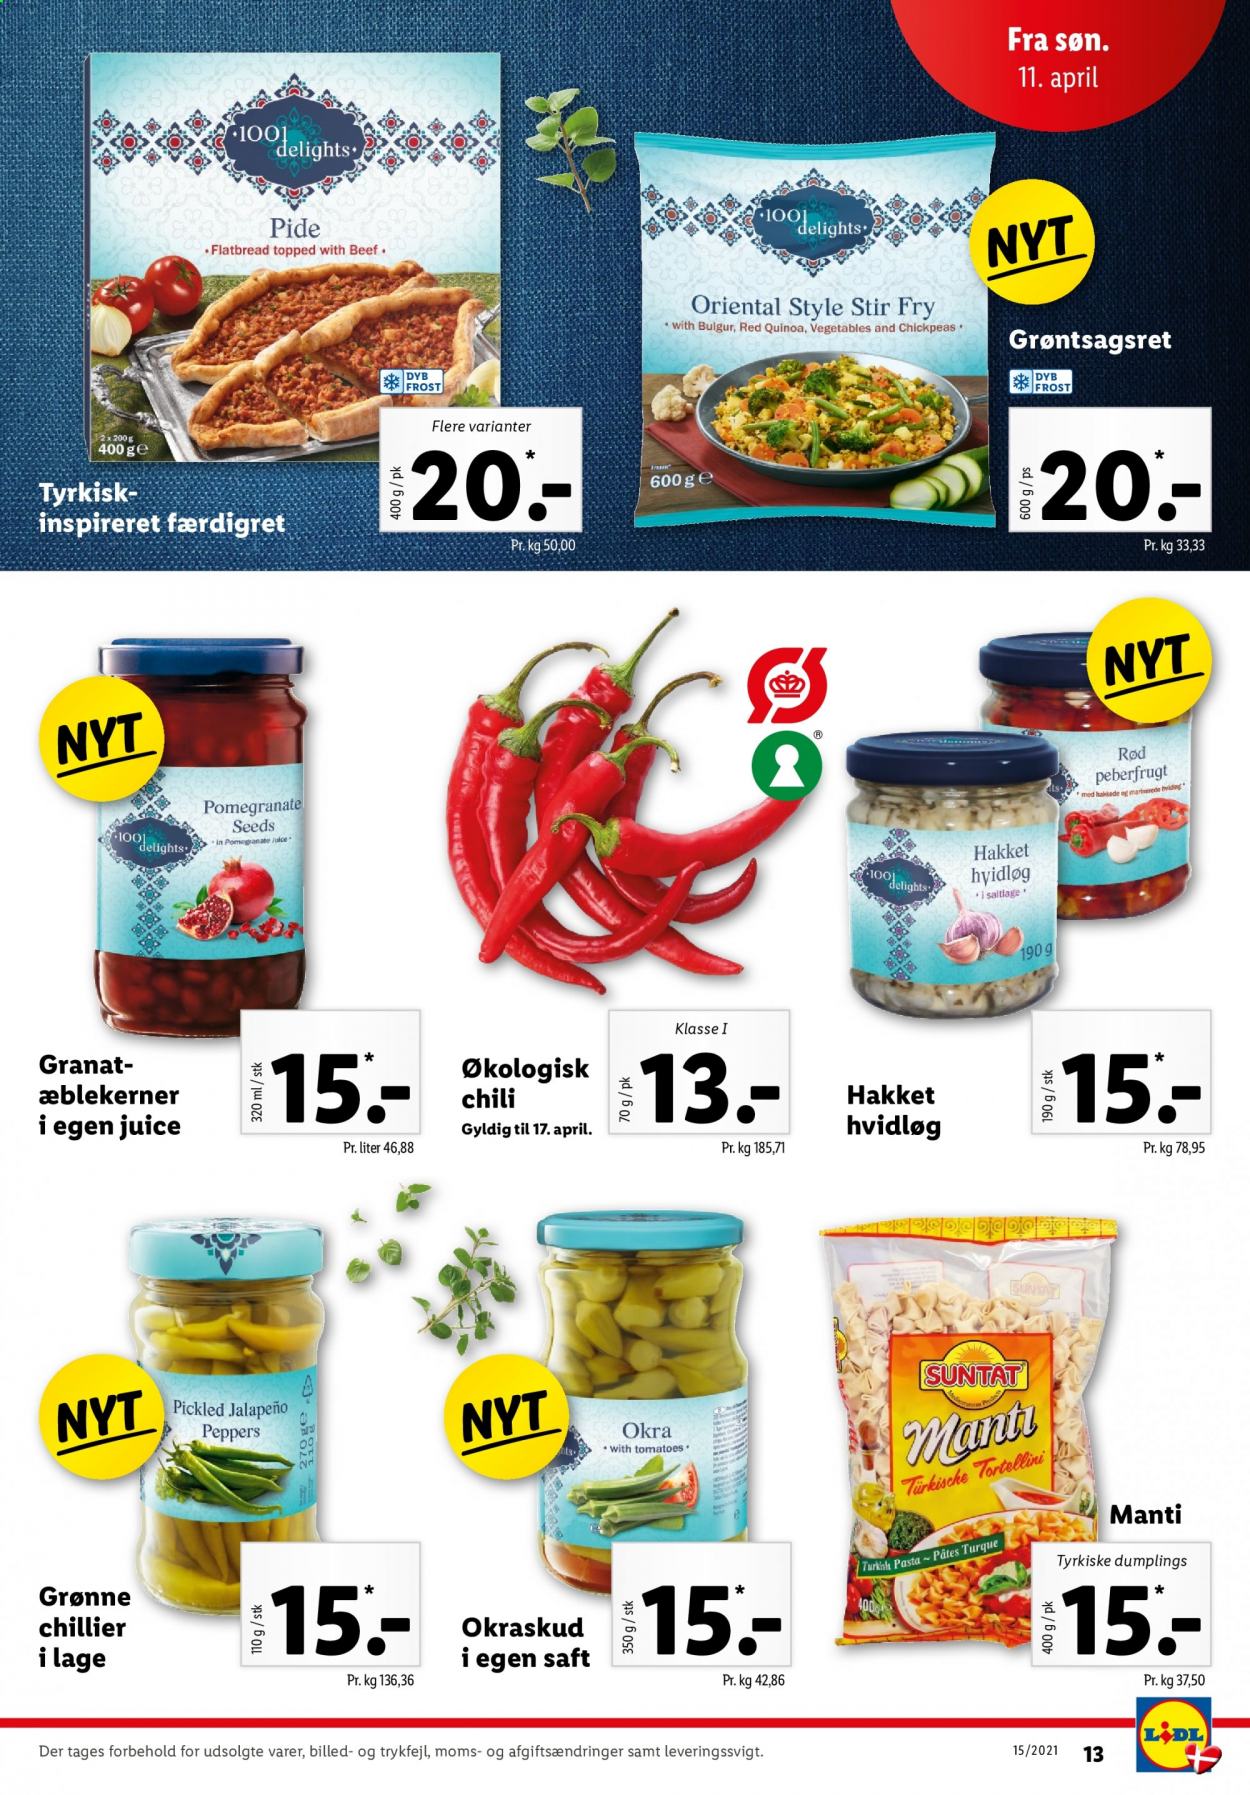 thumbnail - Lidl tilbud  - 11.4.2021 - 17.4.2021 - tilbudsprodukter - hvidløg, okra, peberfrugt, bulgur, pasta, quinoa, tortellini, chili, saft. Side 13.